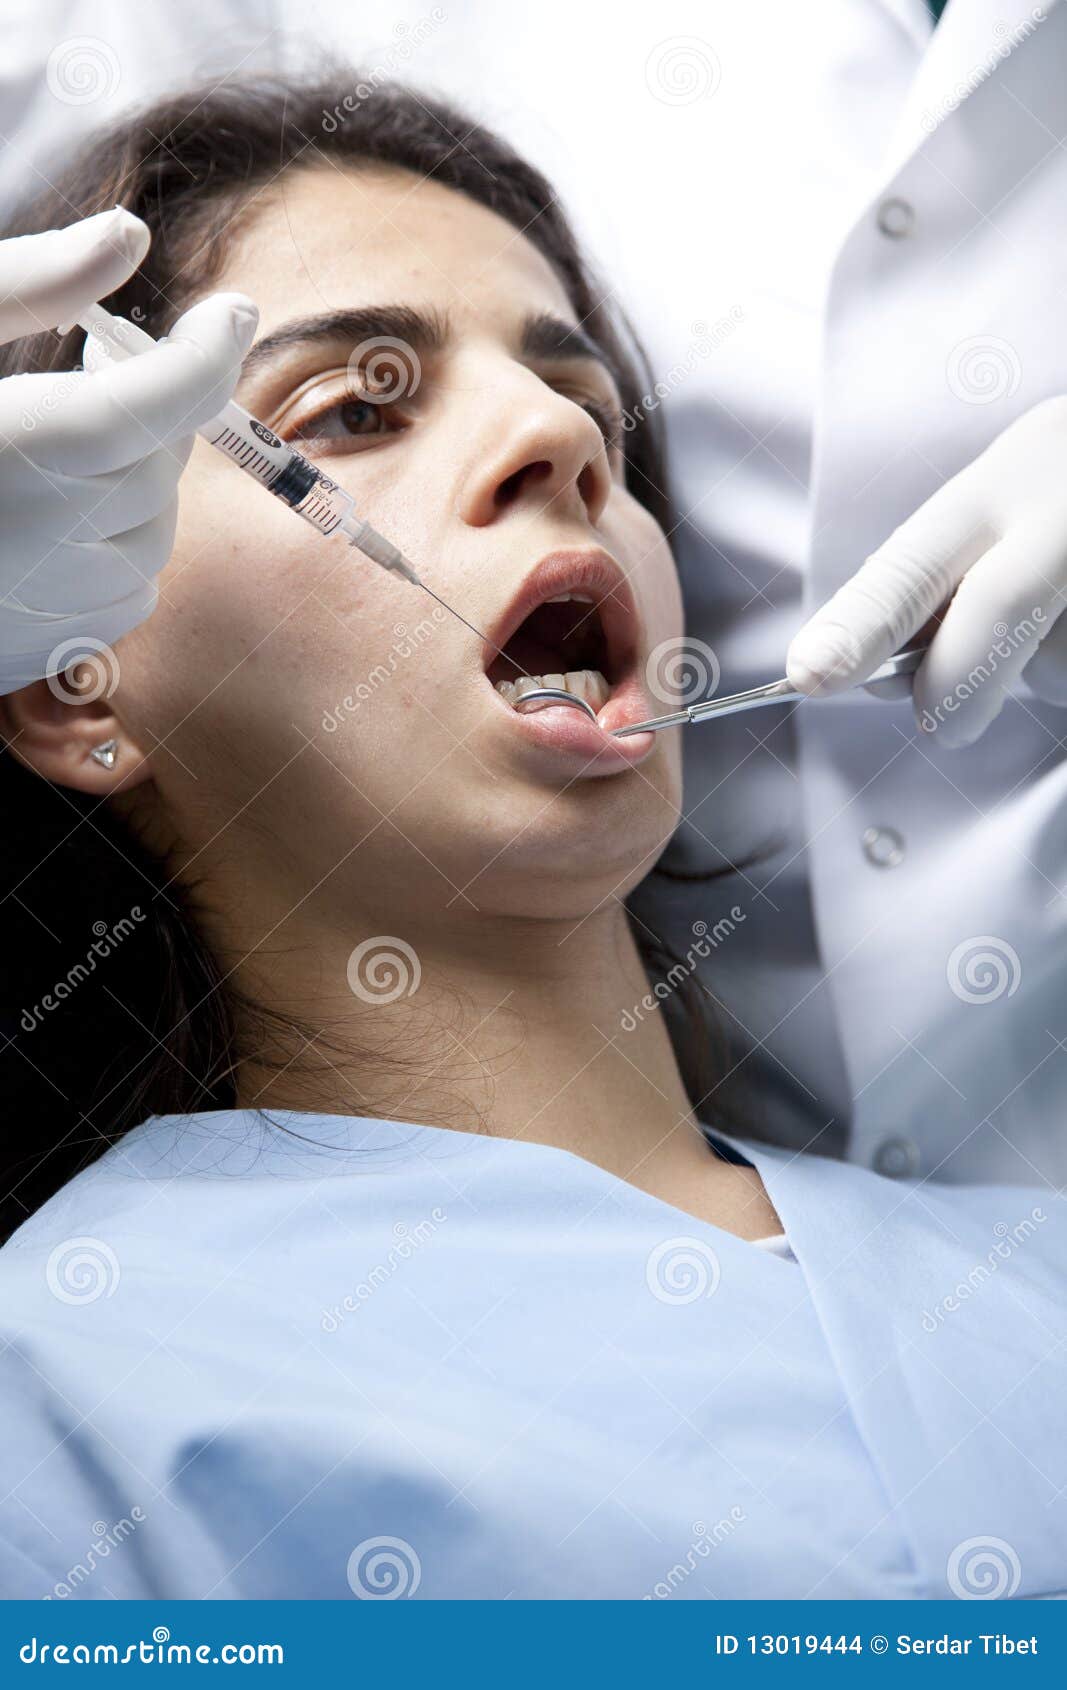 Современное обезболивание. Анестезия в стоматологии. Стоматологическая анестезия в косметологии.